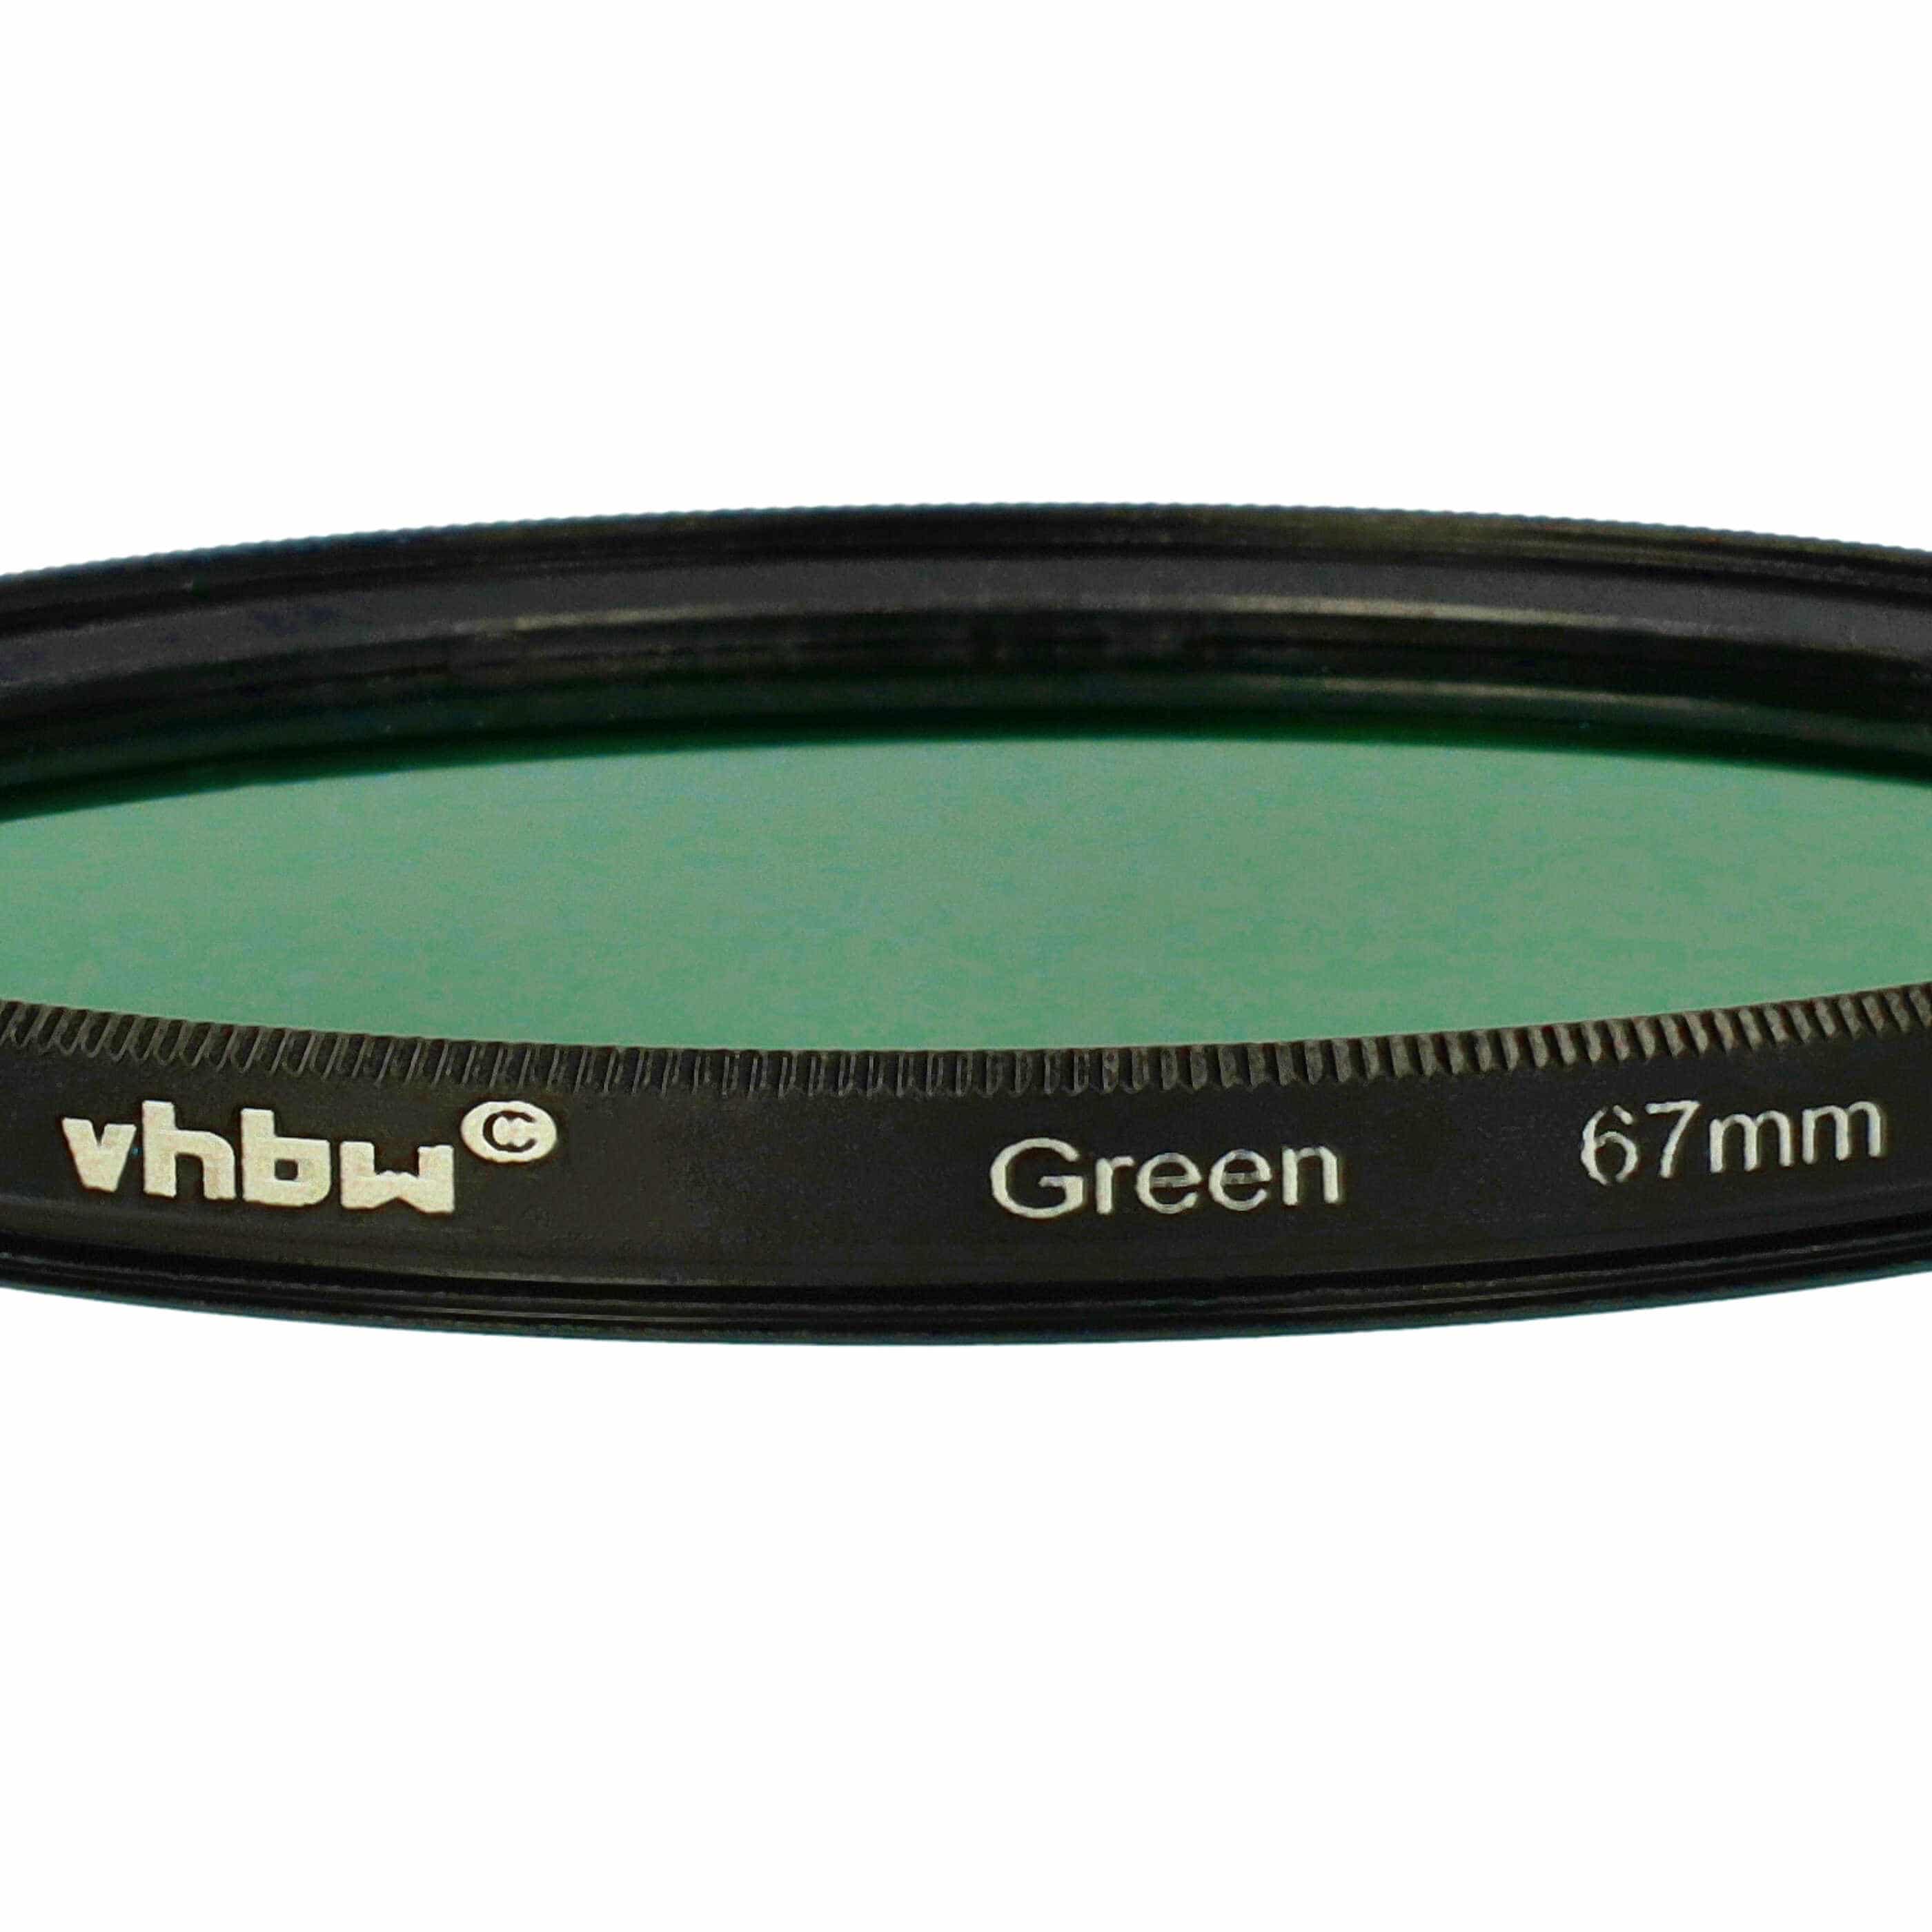 Farbfilter grün passend für Kamera Objektive mit 67 mm Filtergewinde - Grünfilter